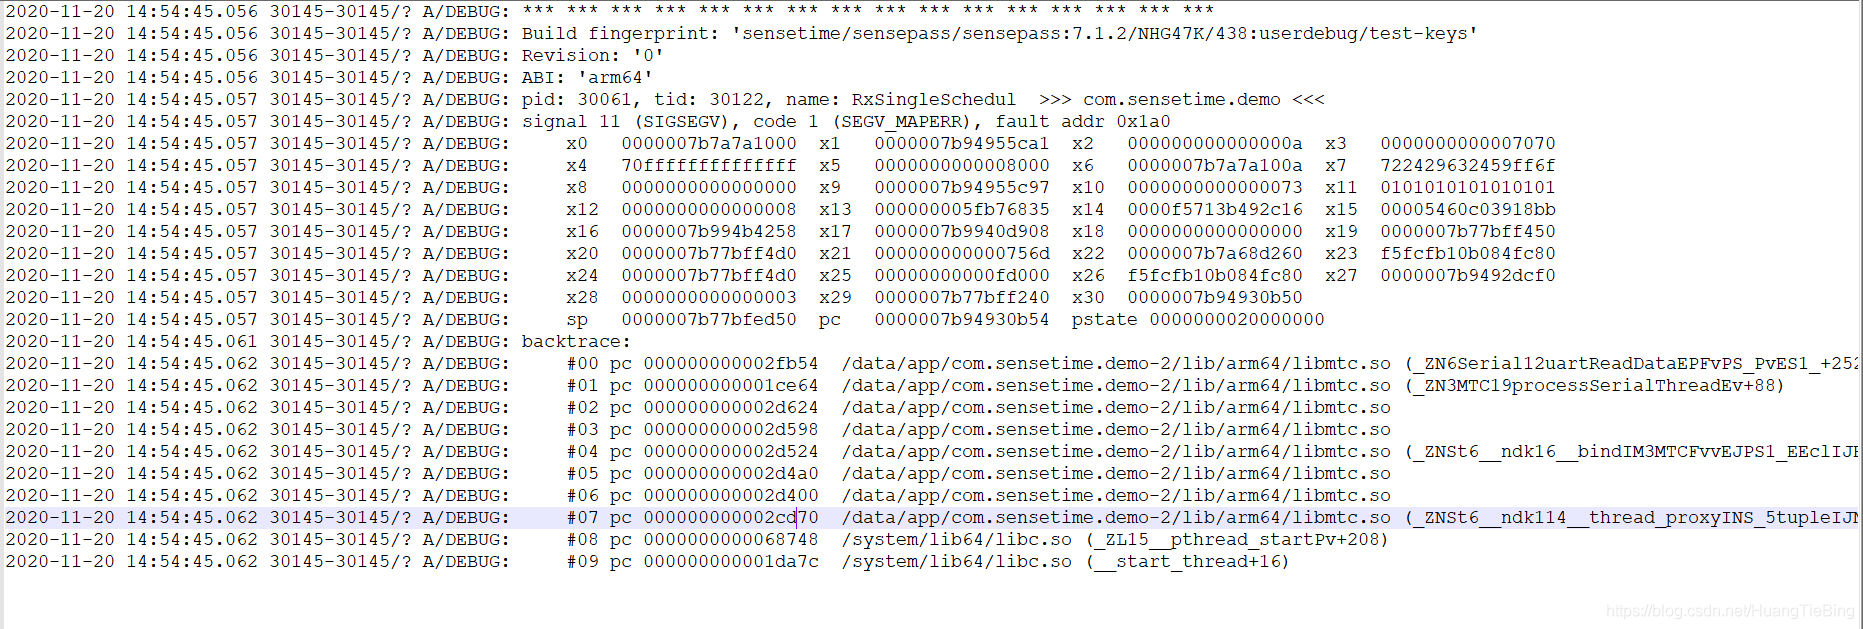 有堆栈信息崩溃日志，存在一个文件里，比如logcat.txt